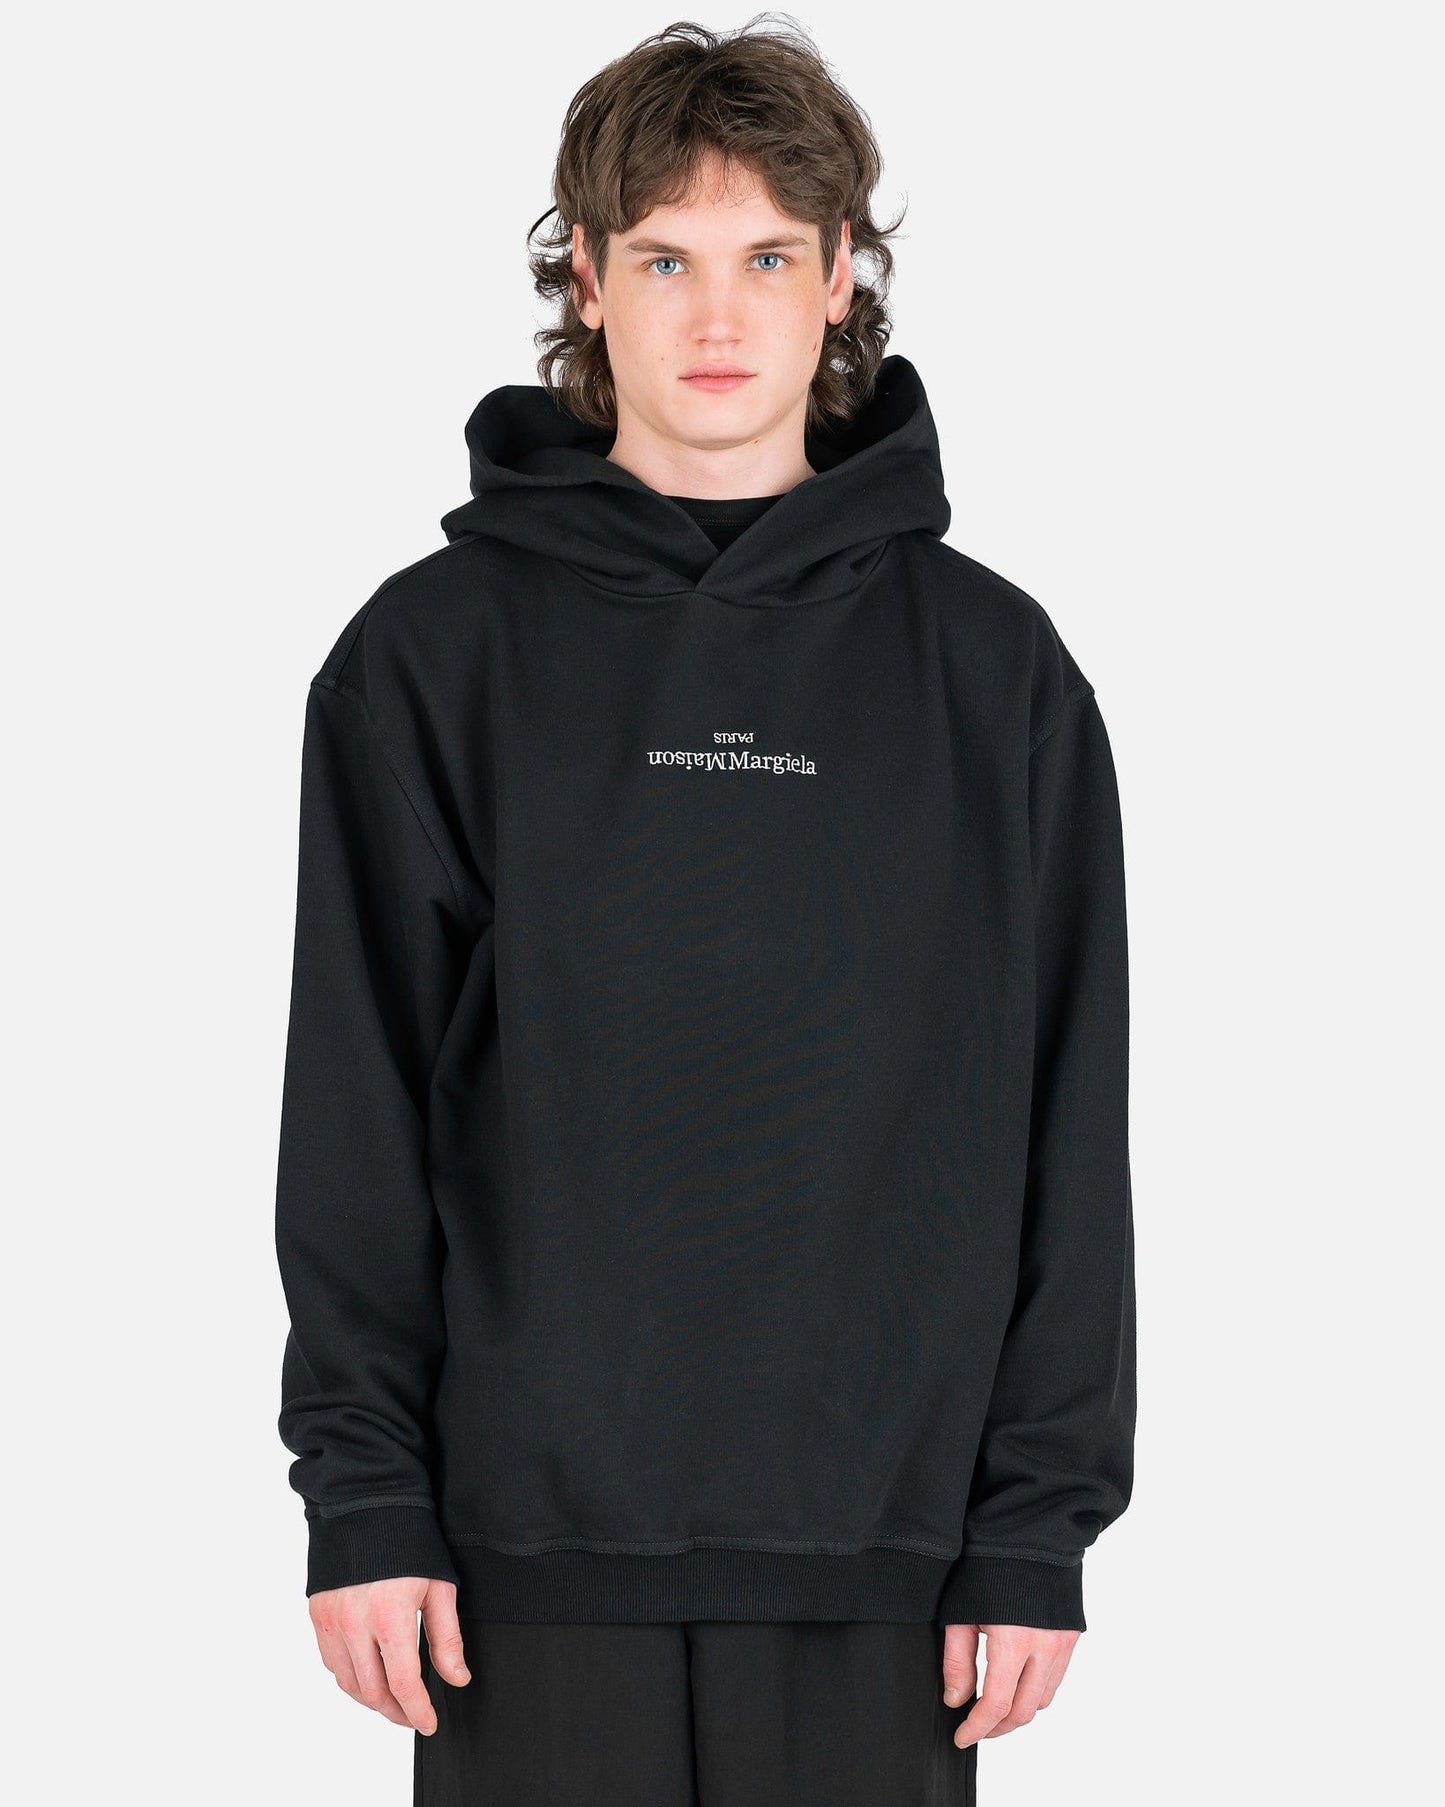 Maison Margiela Men's Sweatshirts Upside Down Logo Hoodie in Black